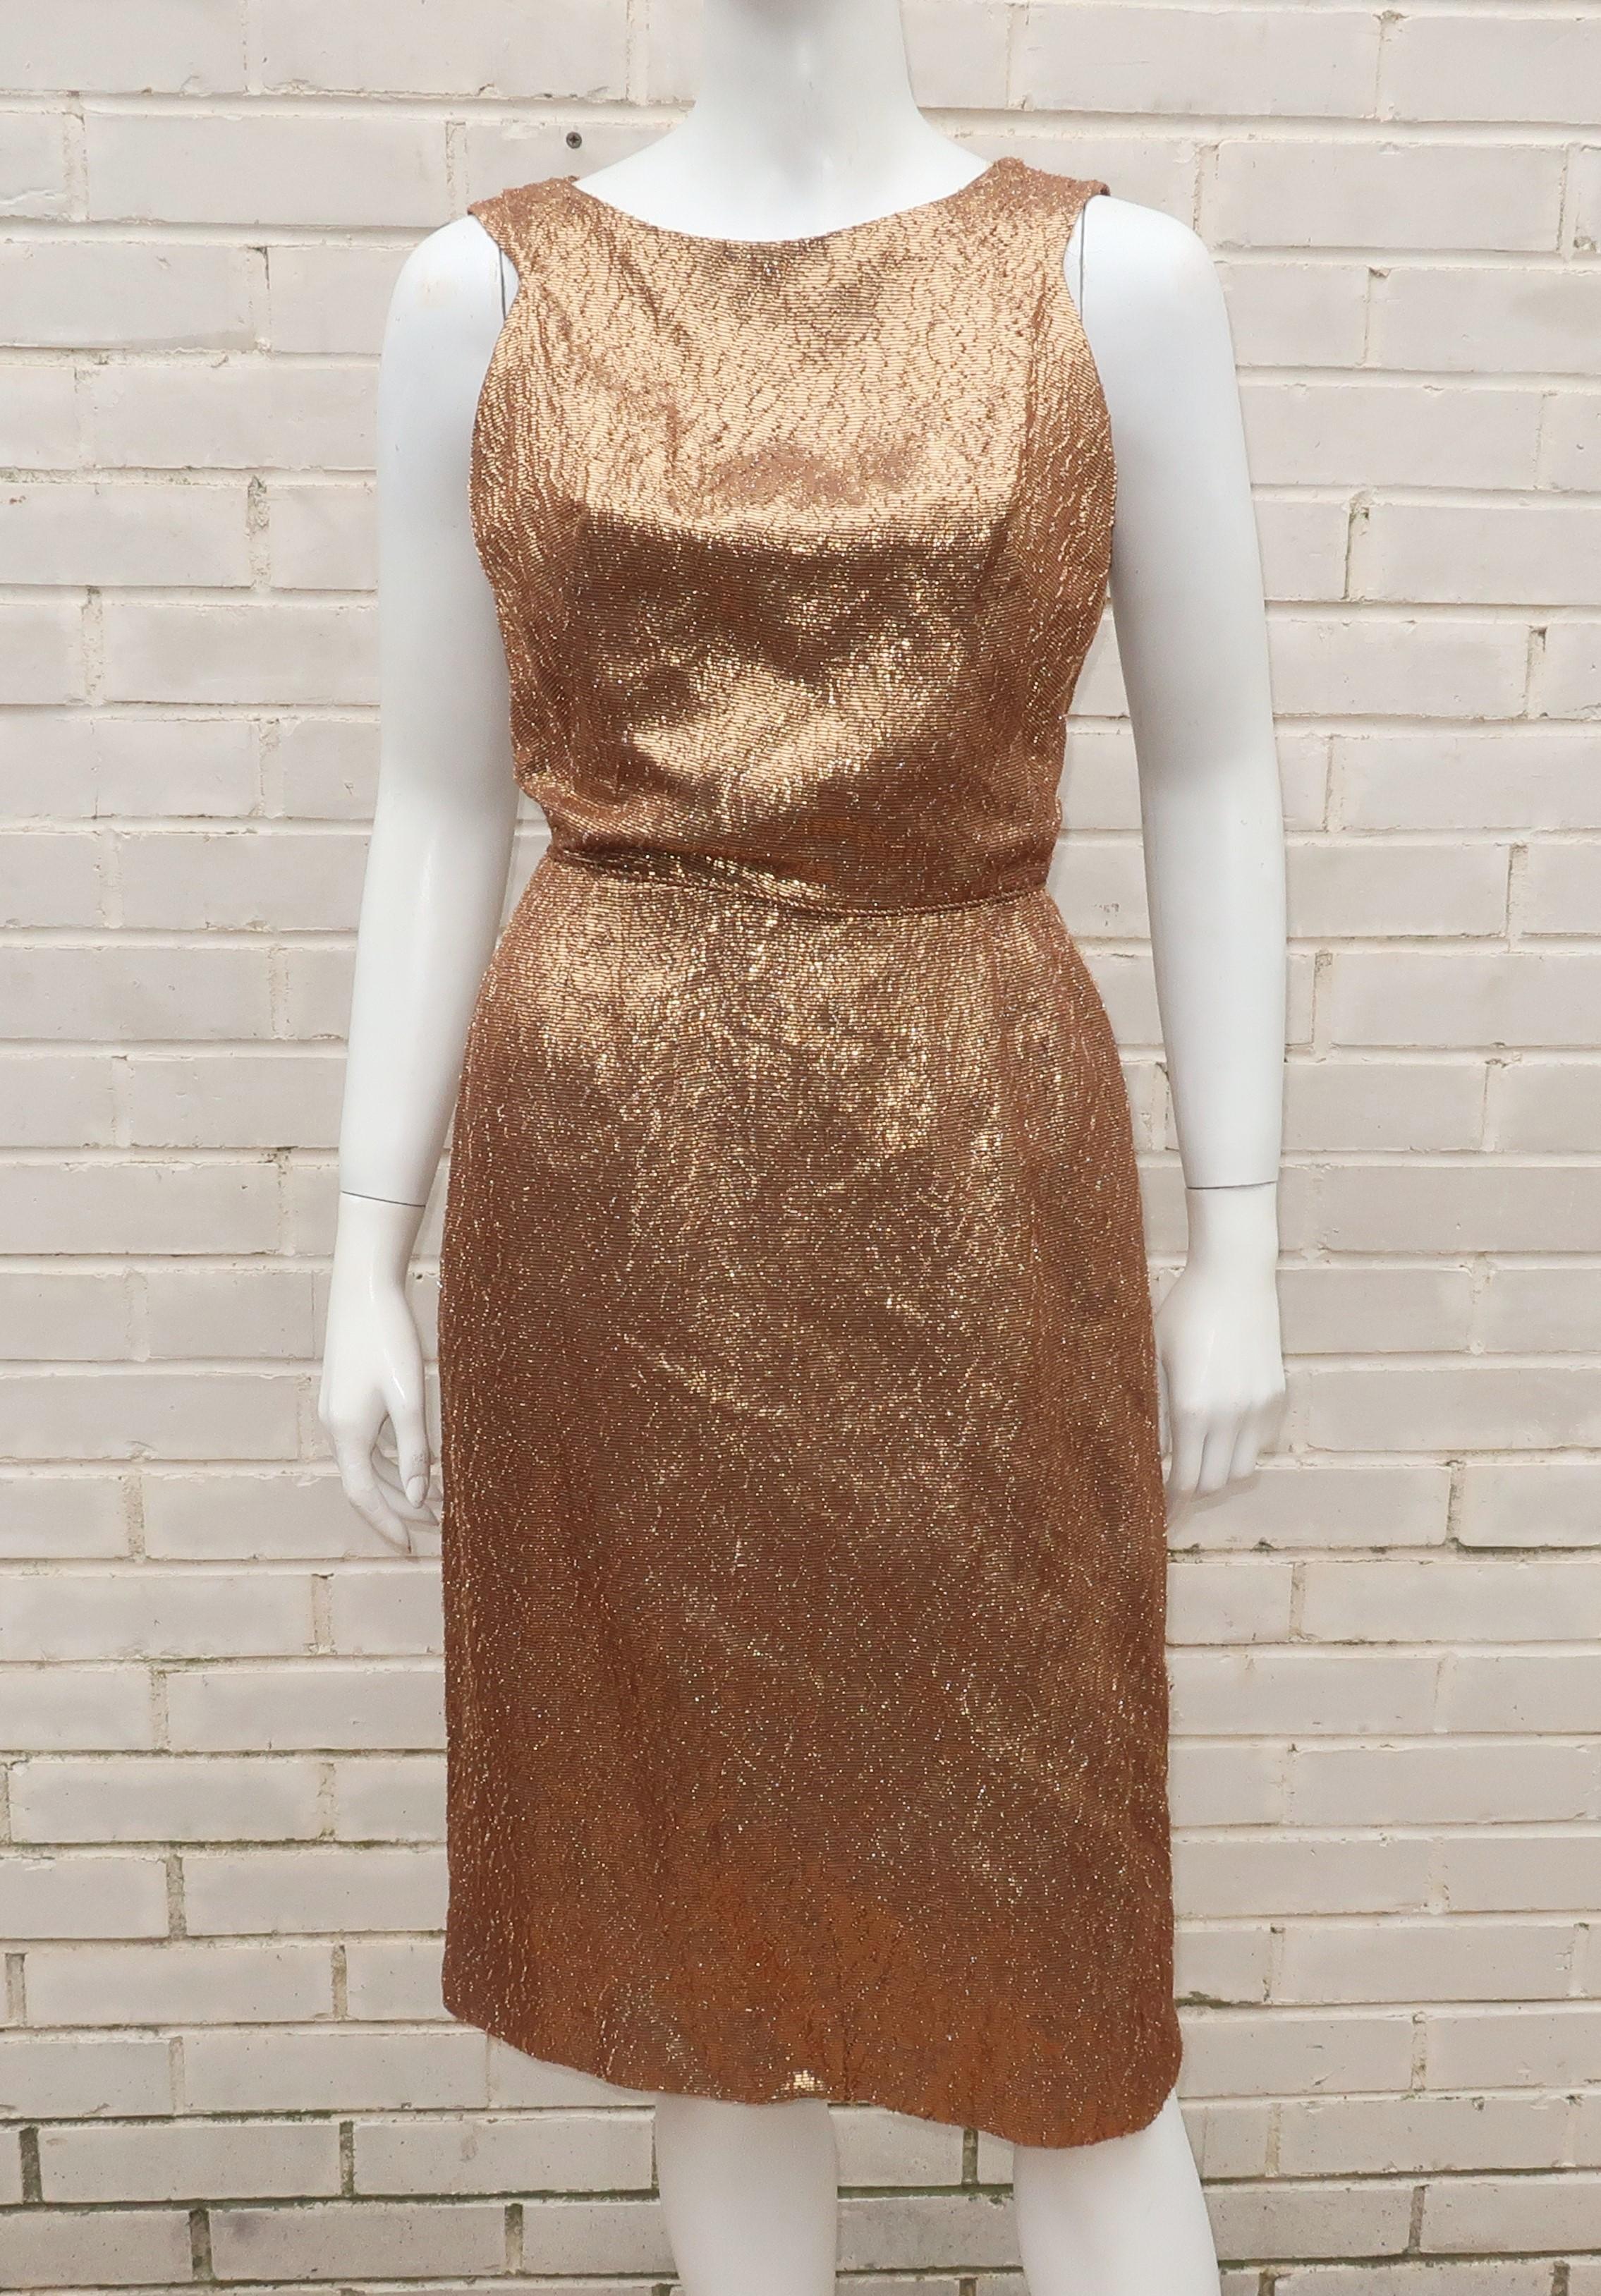 robe ondulée en lamé texturé or bronzé des années 1950 avec une découpe insolente dans le dos accentuée par des nœuds.  La silhouette sans manches est dotée de fermetures à glissière, de crochets et de boutons-pression au dos et d'un cordon à la